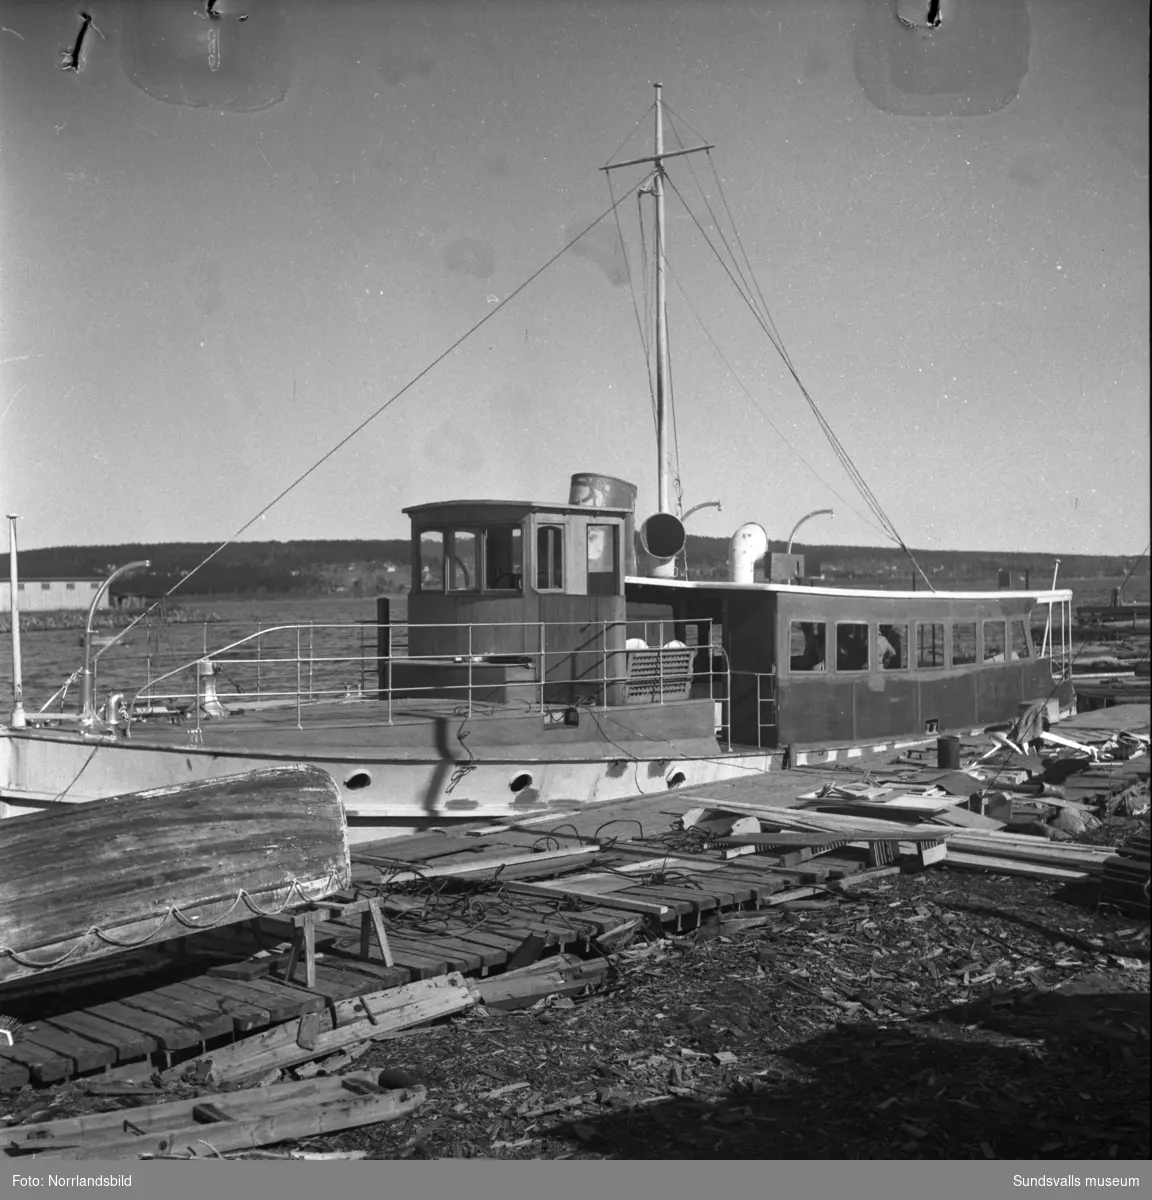 Renovering av båten Aramis som ska trafikera sträckan Sundsvall-Vindhem. Båten ligger ungefär vid Kubikenborgs sågverk.